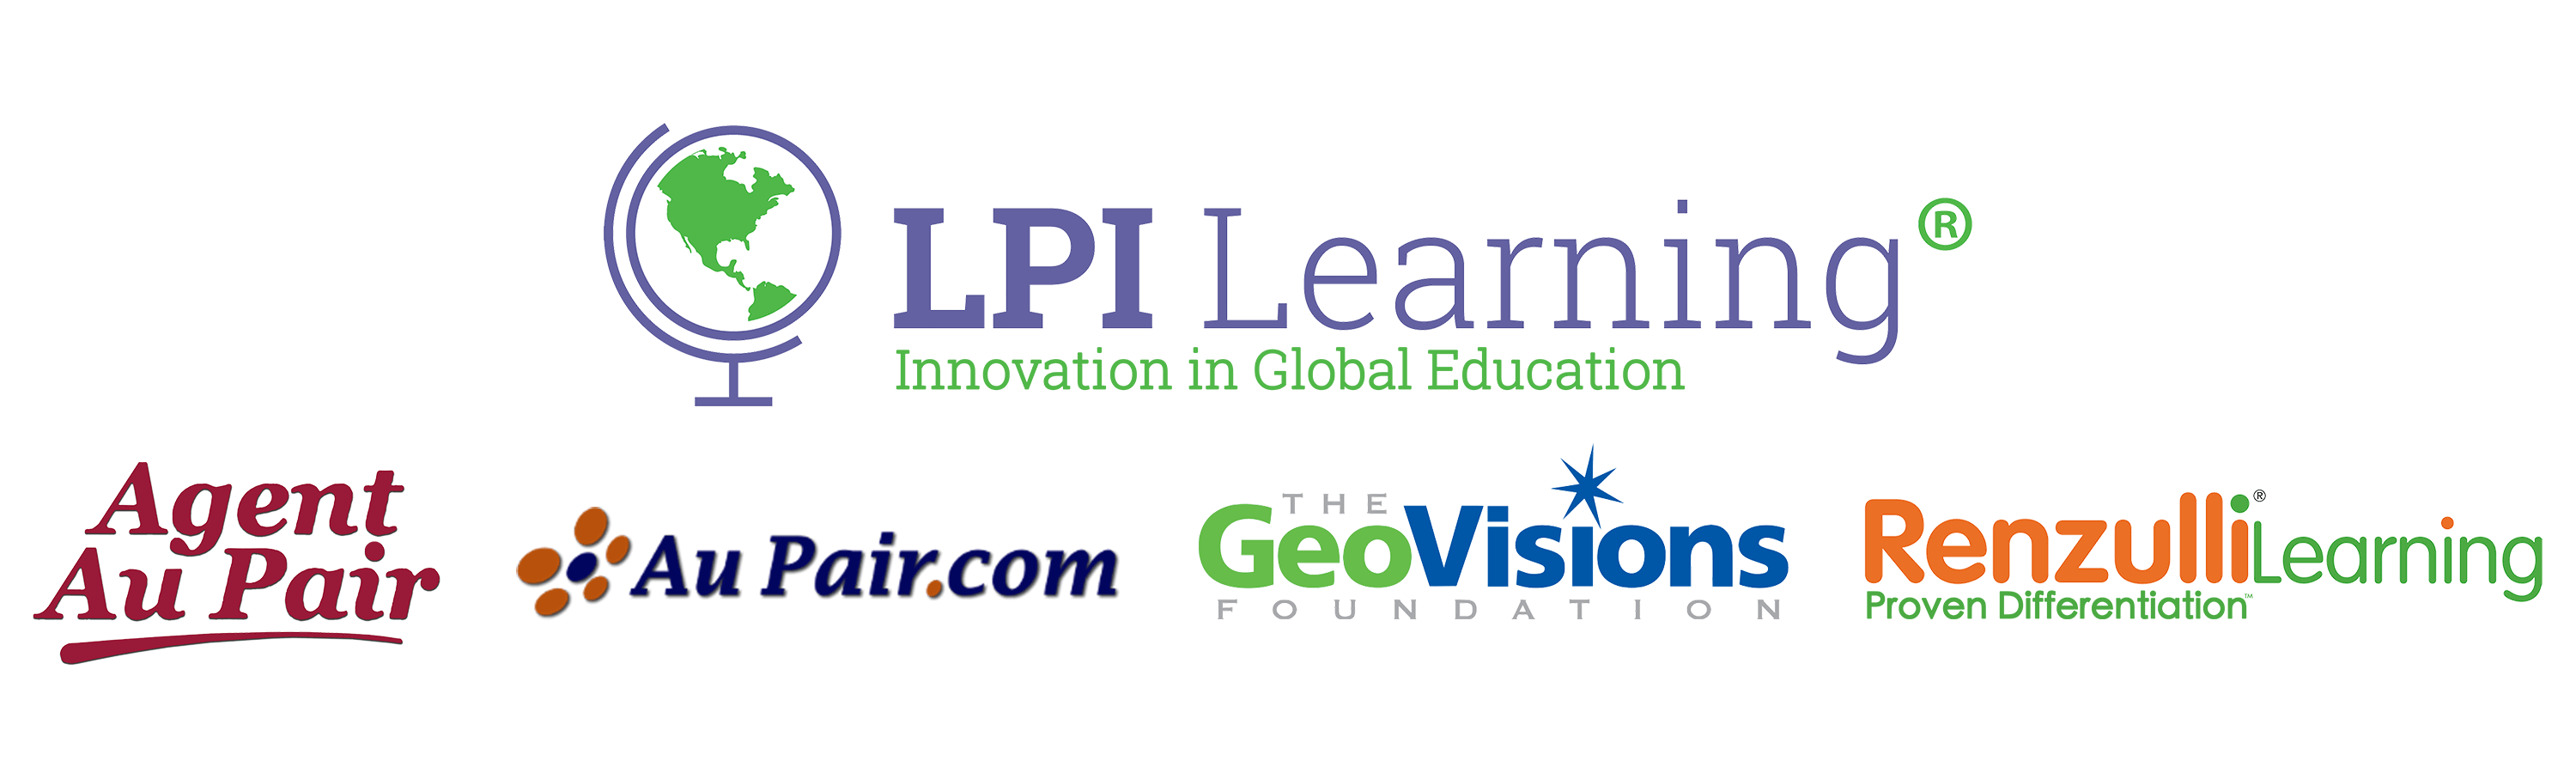 U of Learning Logo - LPI Learning